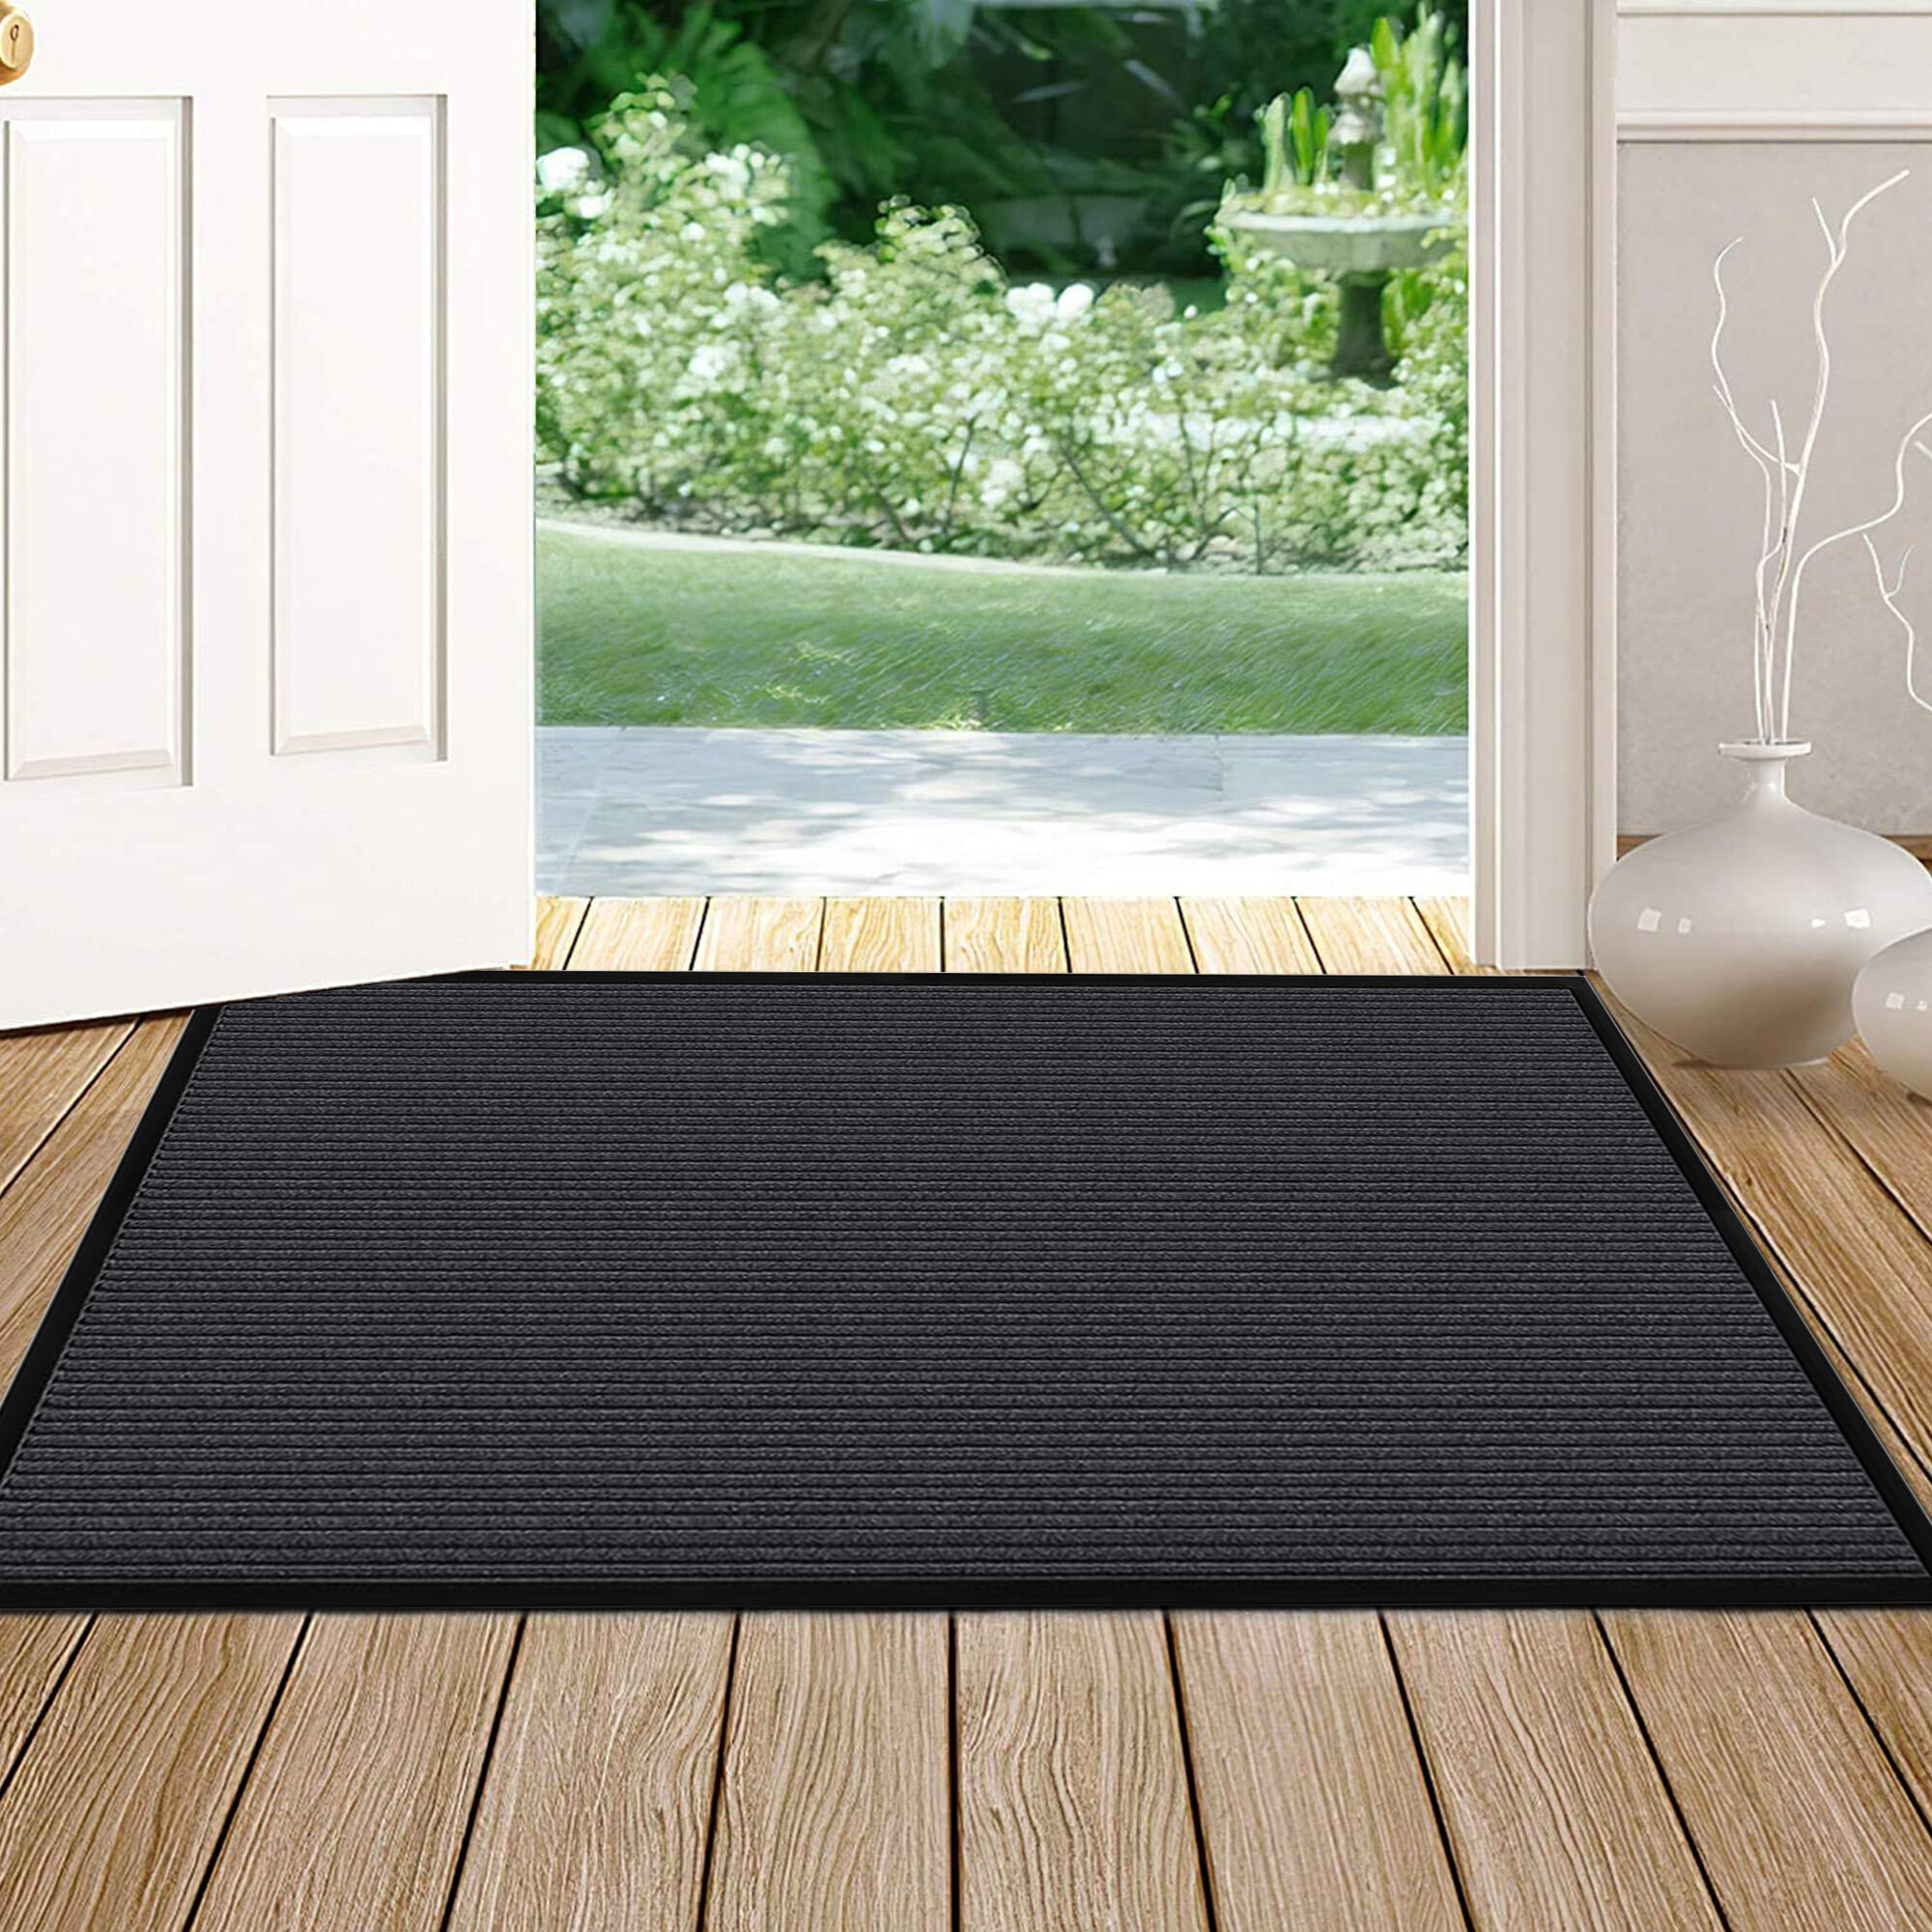 Non-Slip Rubber Mat For Home Front Door Entry Floor Indoor Outdoor Carpet Rug 